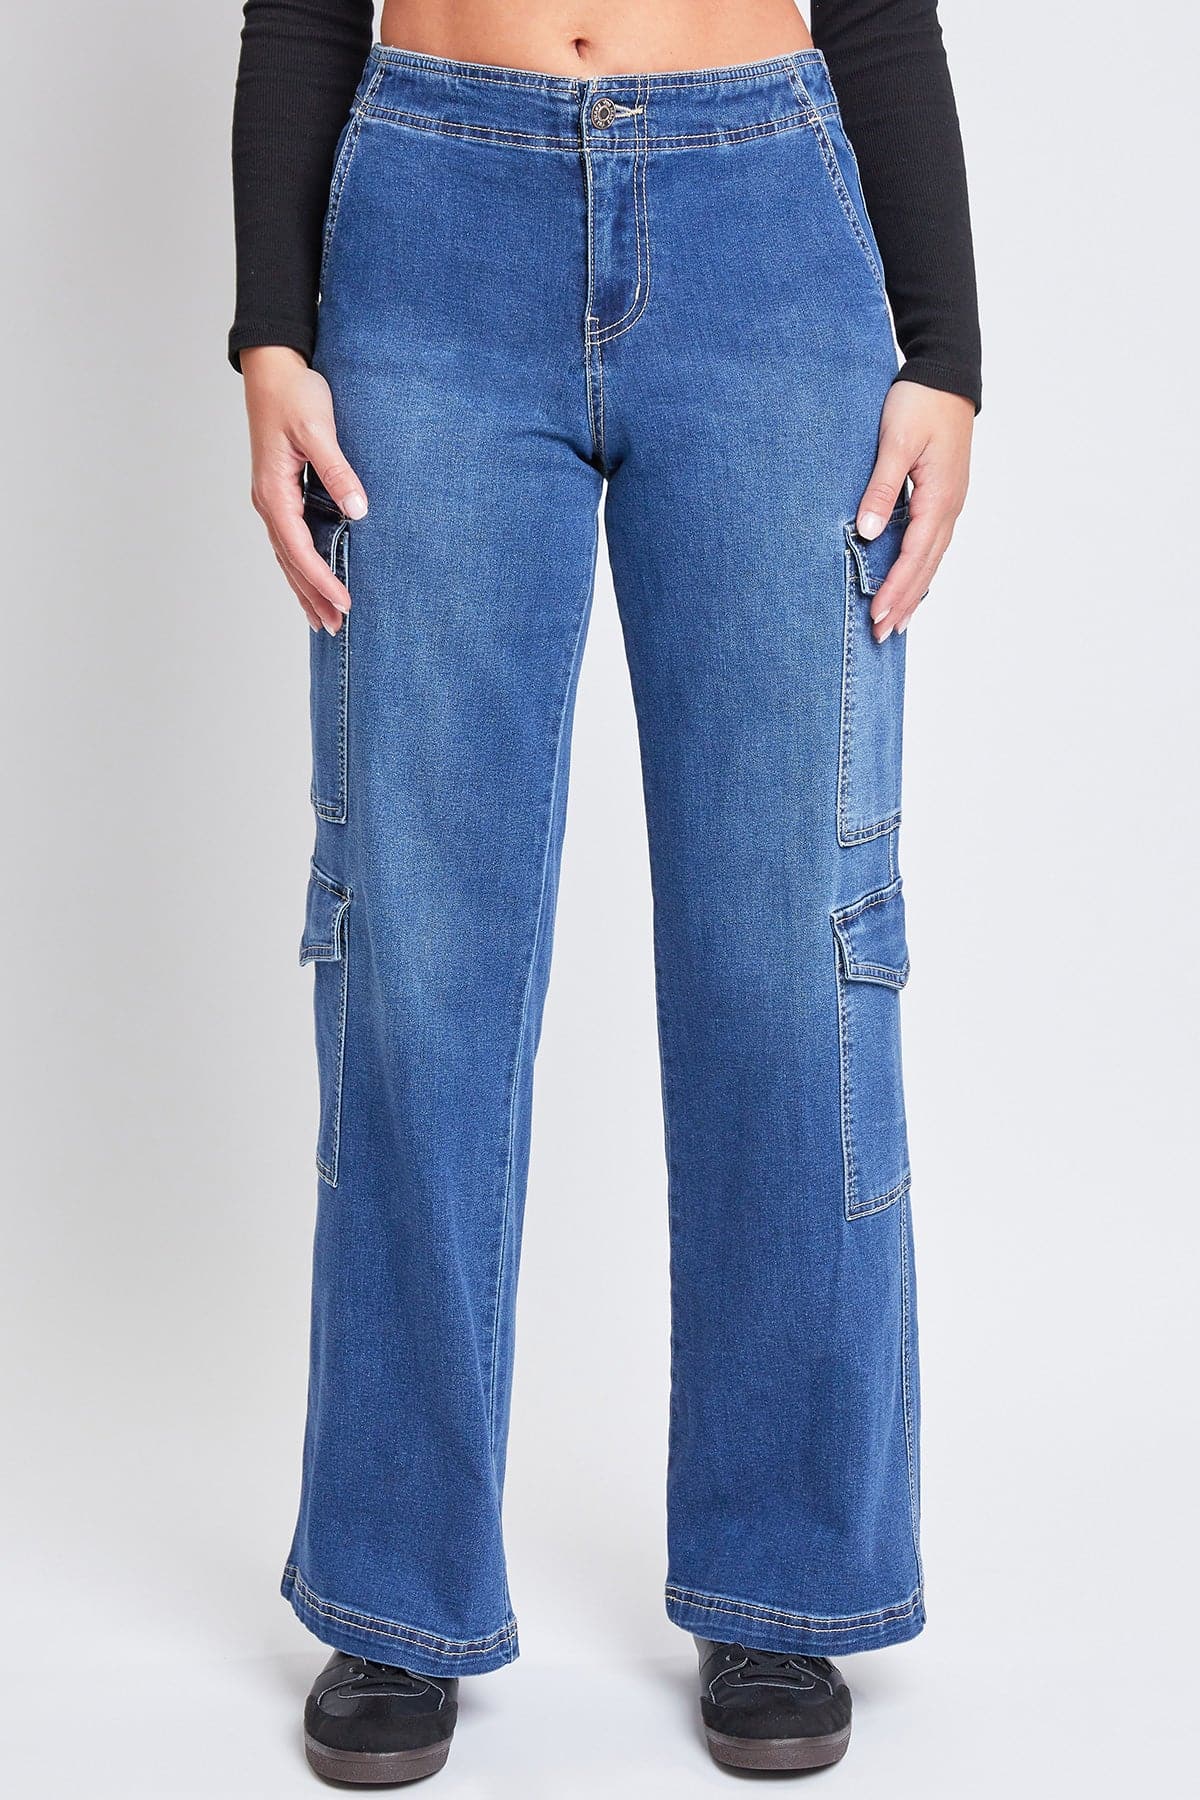 Women’s Wide Leg Double Cargo Jean